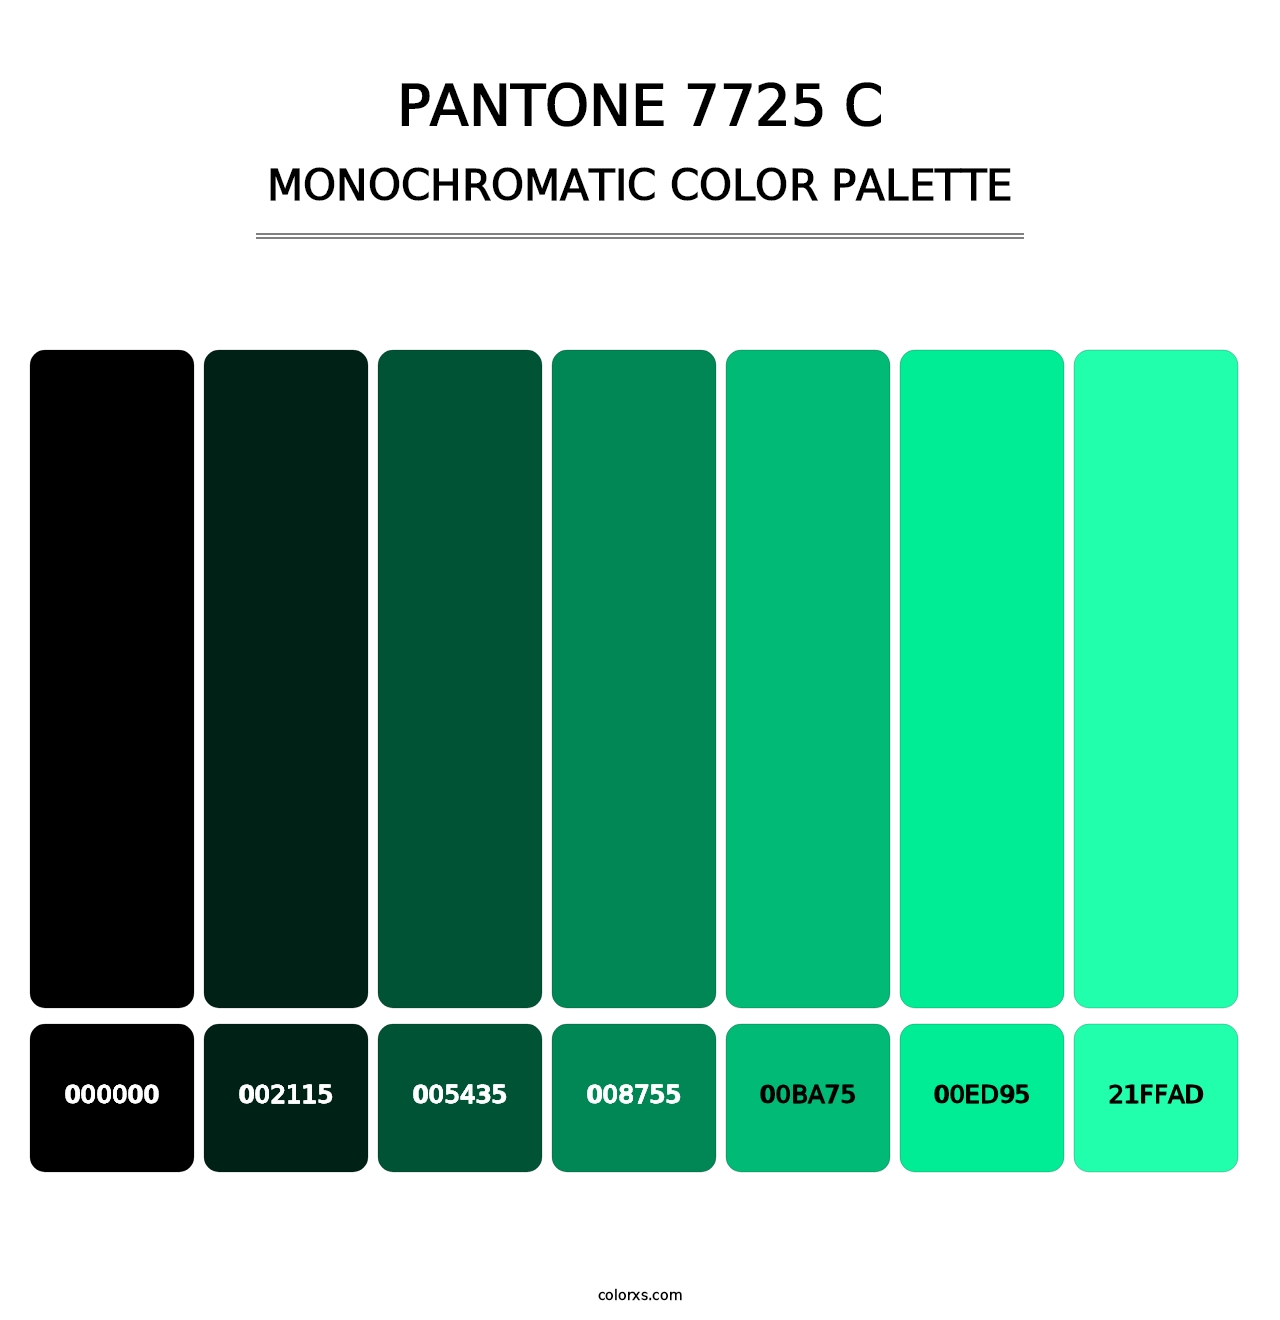 PANTONE 7725 C - Monochromatic Color Palette